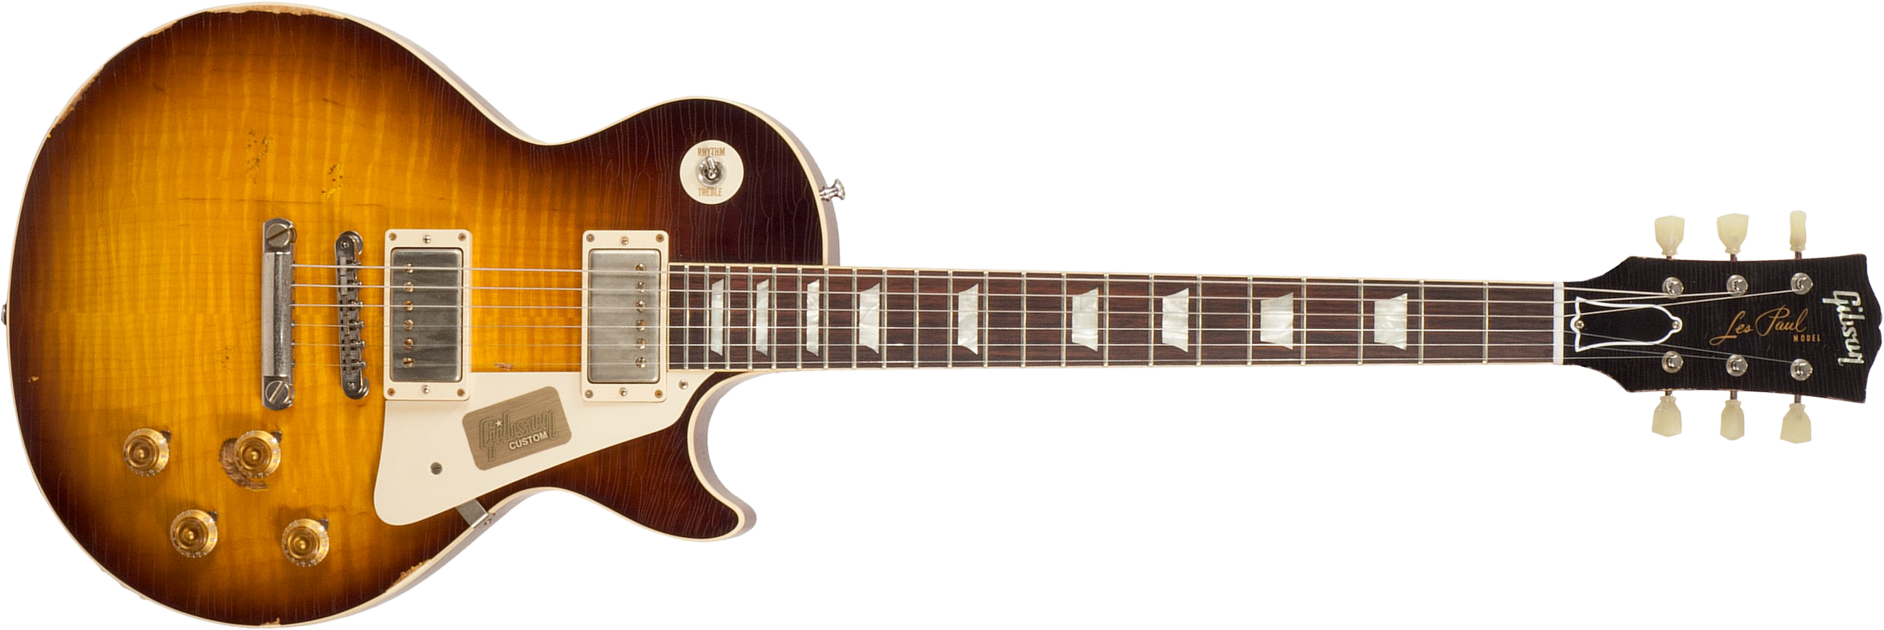 Gibson Custom Shop M2m Les Paul Standard 1958 2h Ht Rw #r862323 - Aged Kindred Burst Fade - Guitare Électrique Single Cut - Main picture